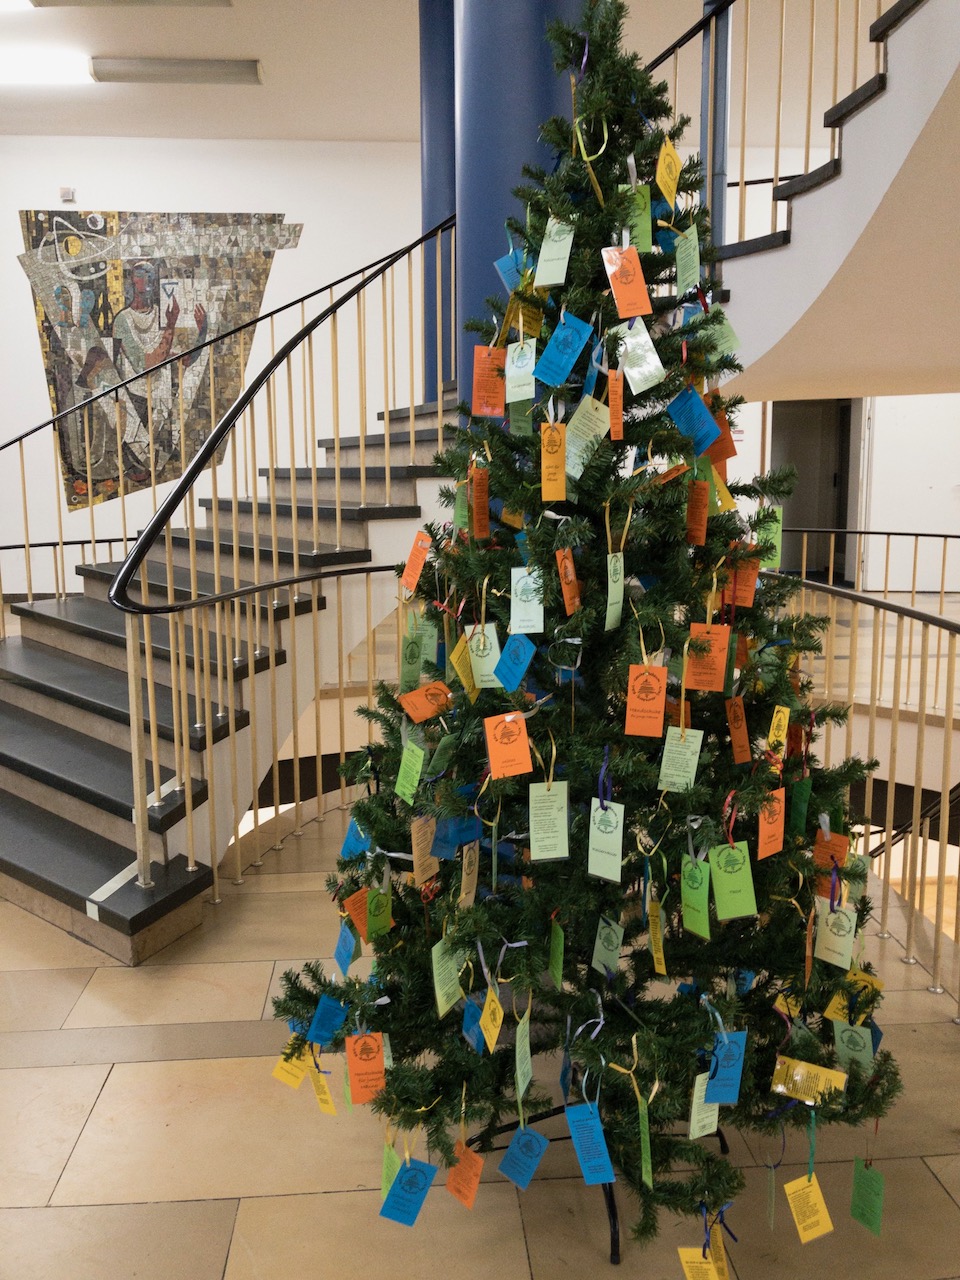 Wer in Nürnberg ein Kärtchen einsammeln möchte: Am Fachbereich Wirtschaftswissenschaften ist einer der Weihnachtsbäume zu finden. (Bild: FAU/Fabian Pfaffenberger)